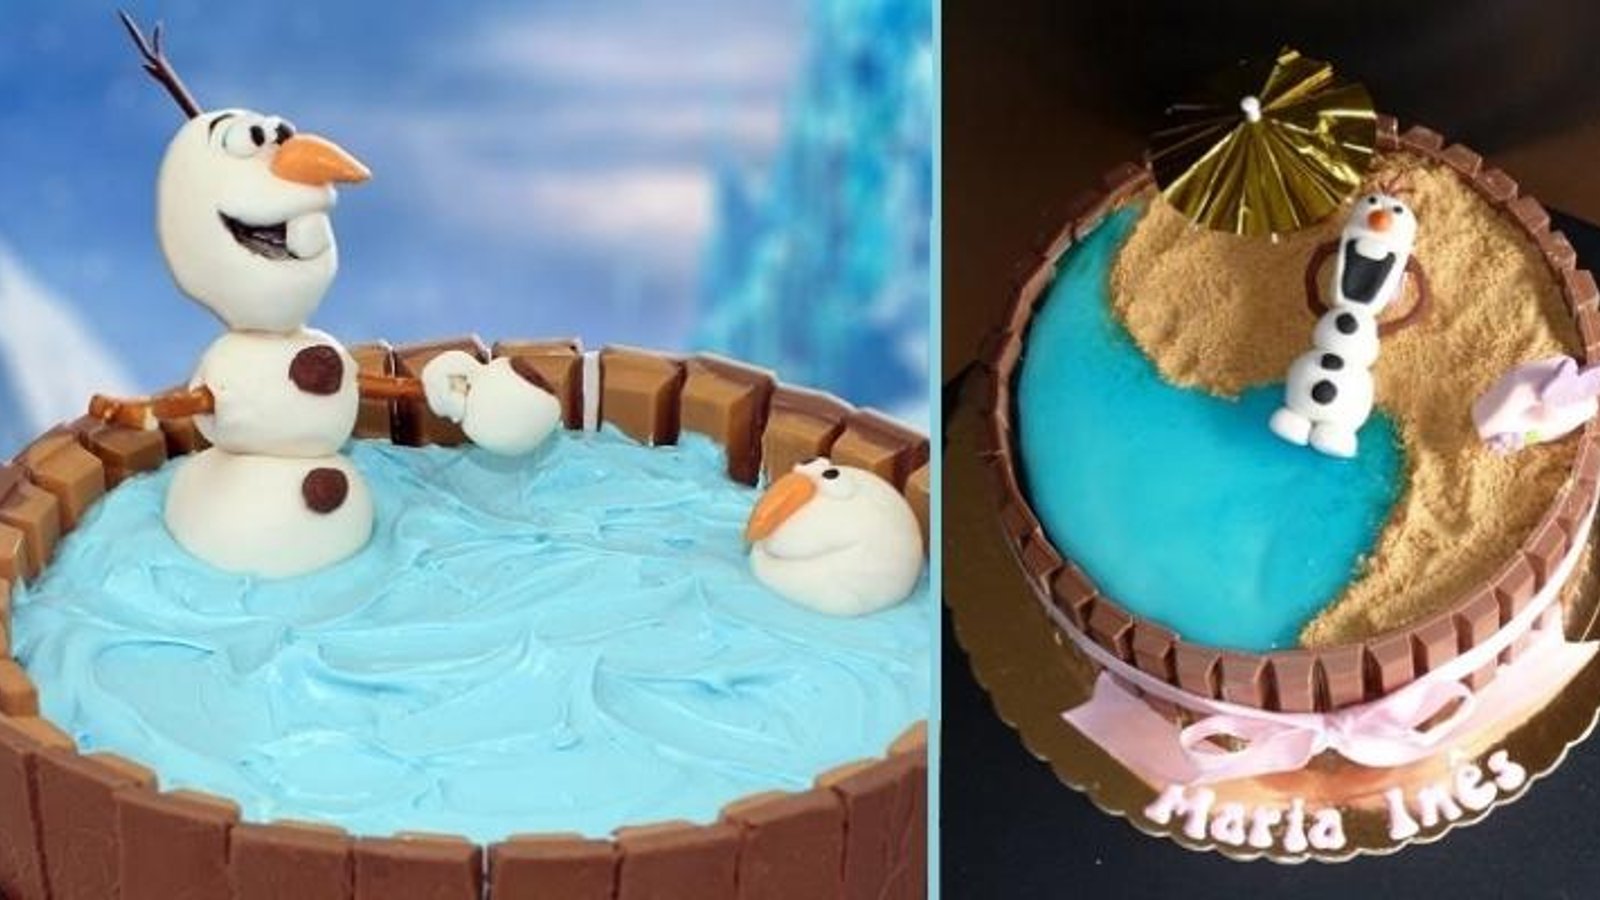 Comment faire le plus facile et le plus amusant gâteau d'Olaf! PLUS 3 autres modèles à voir 